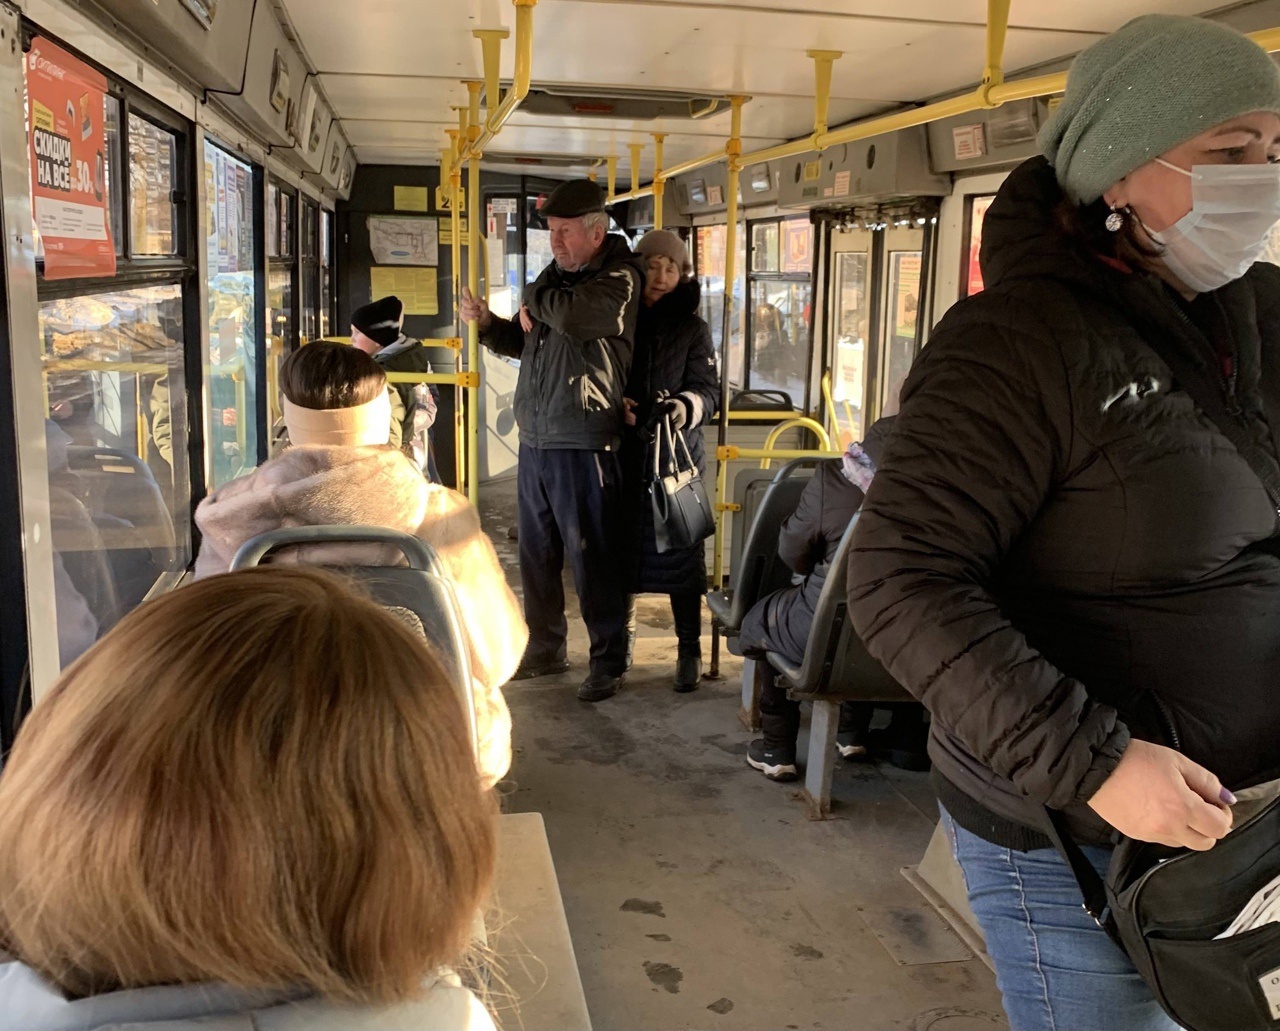 В Ярославле кондуктор выгнала ребенка из троллейбуса за отказ платить наличными